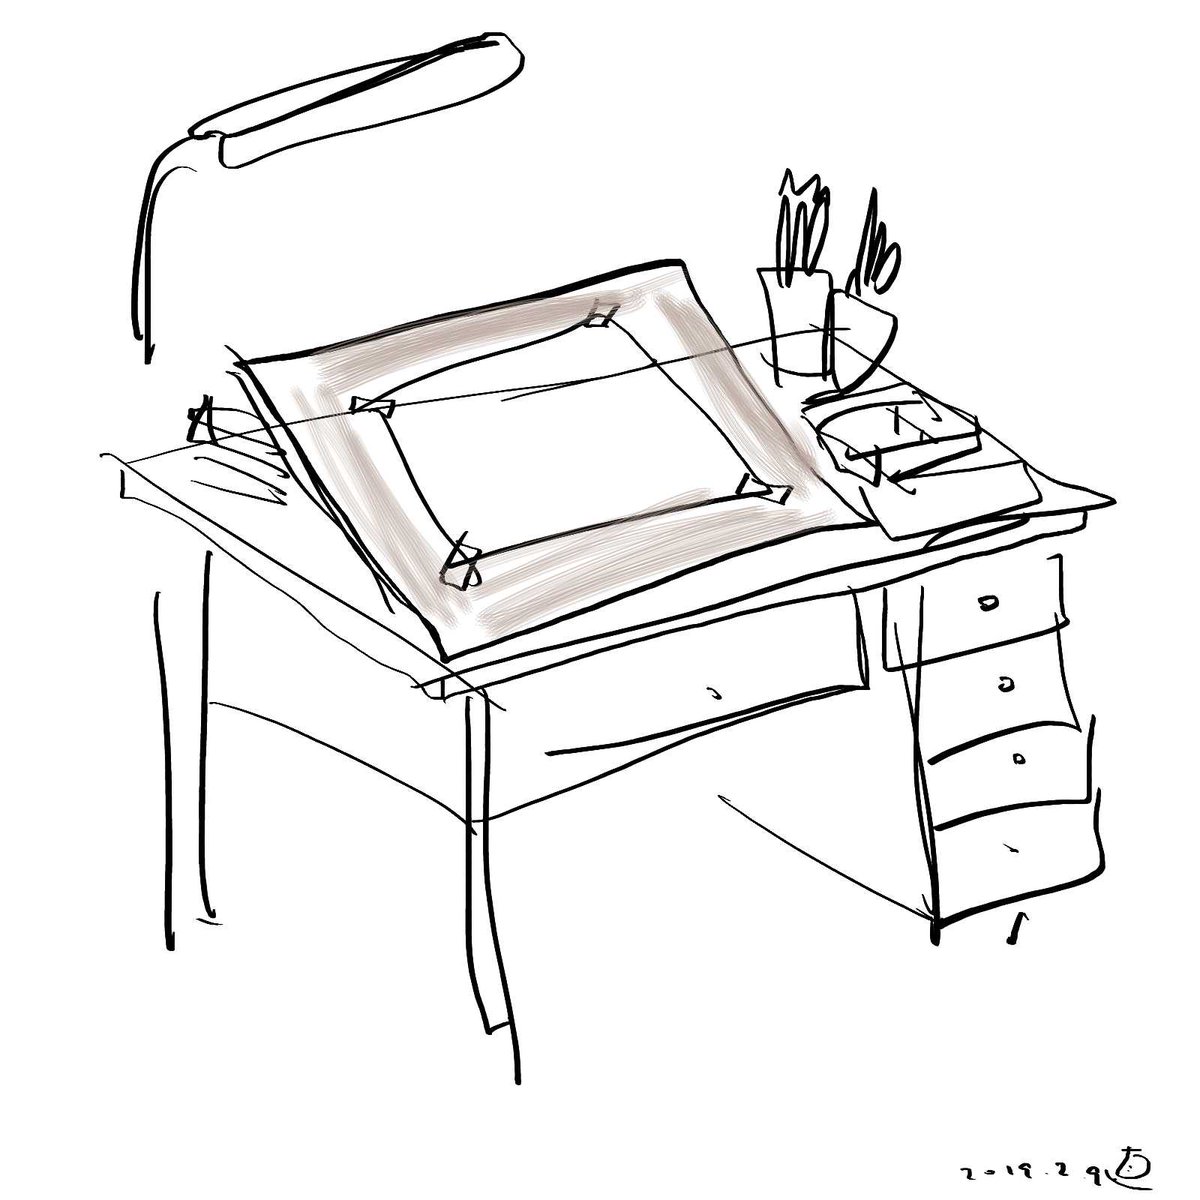 多くの先輩イラストレーターの、絵を描く机は、木でできた普通の勉強机みたいな(引き出しがついている)の上に大きな板を斜めに置いてるのね。それが椅子を使う高さの机だったり、畳の上に座って描くタイプだったり、小松崎茂さんのように、こたつの上だったりした。 